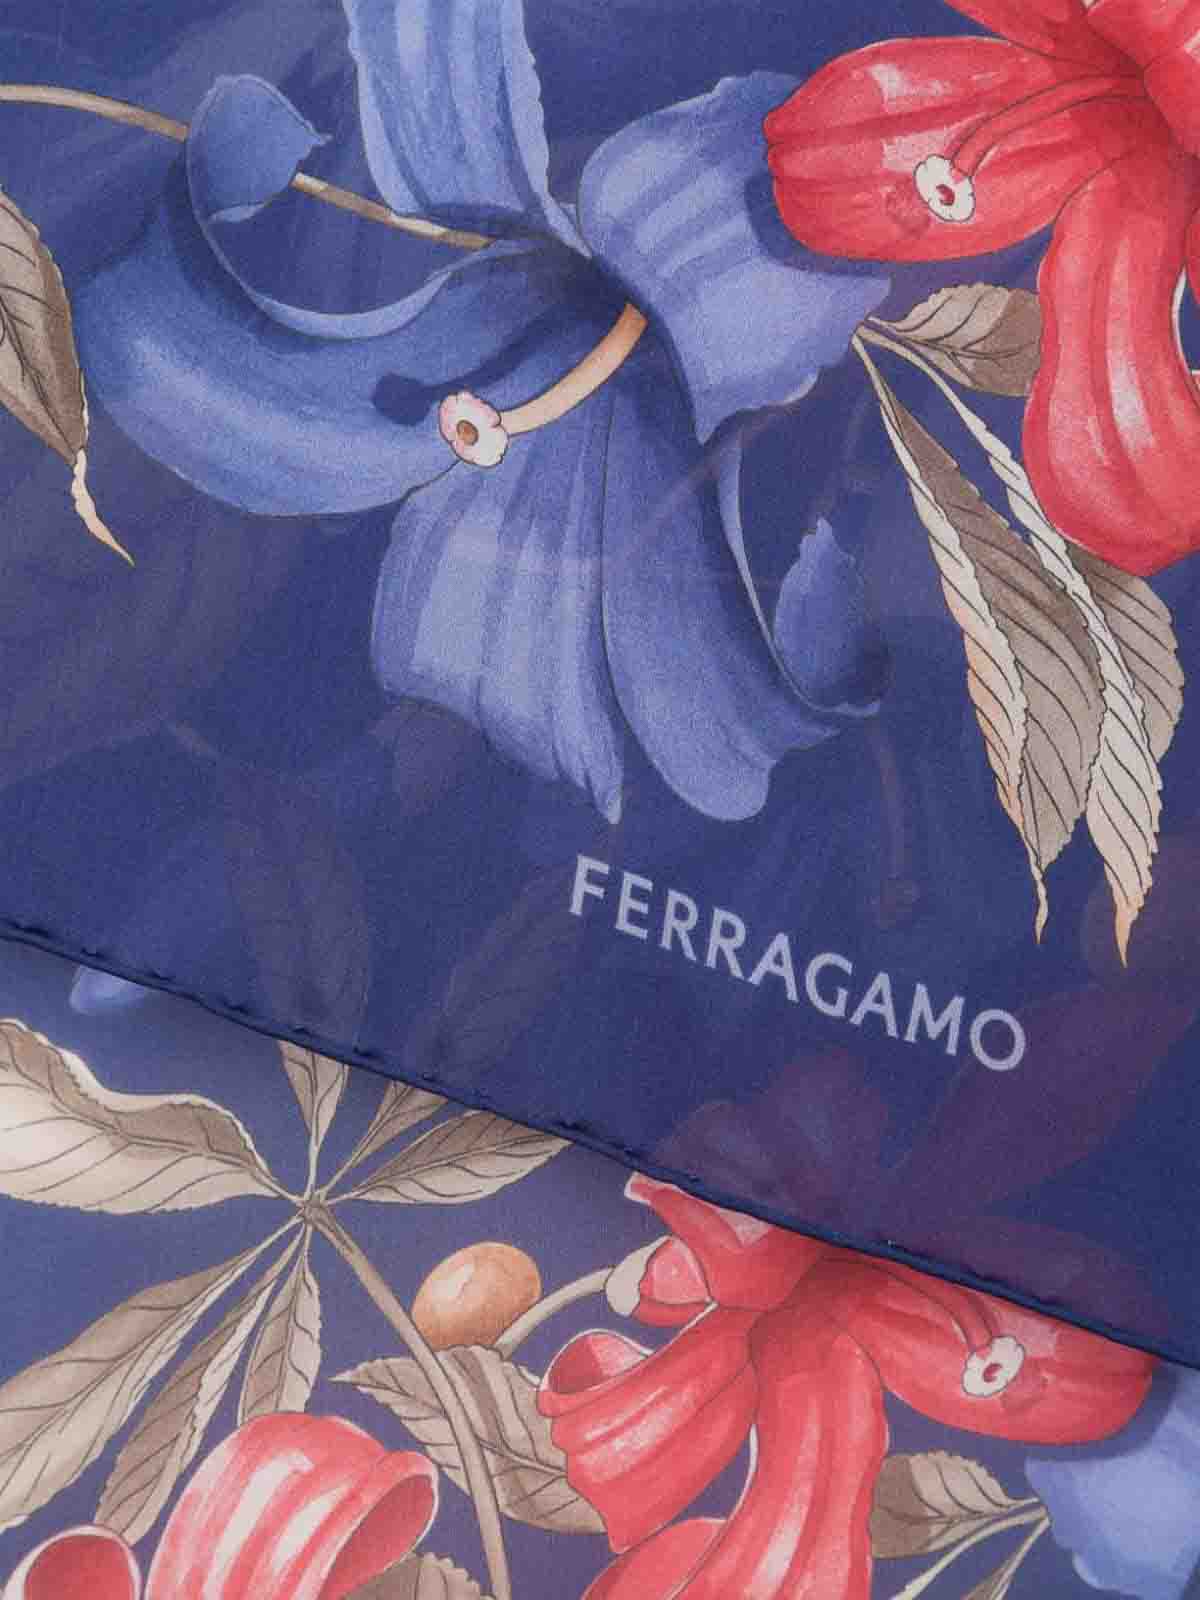 スカーフ Ferragamo - スカーフ - ブルー - 320825771260004